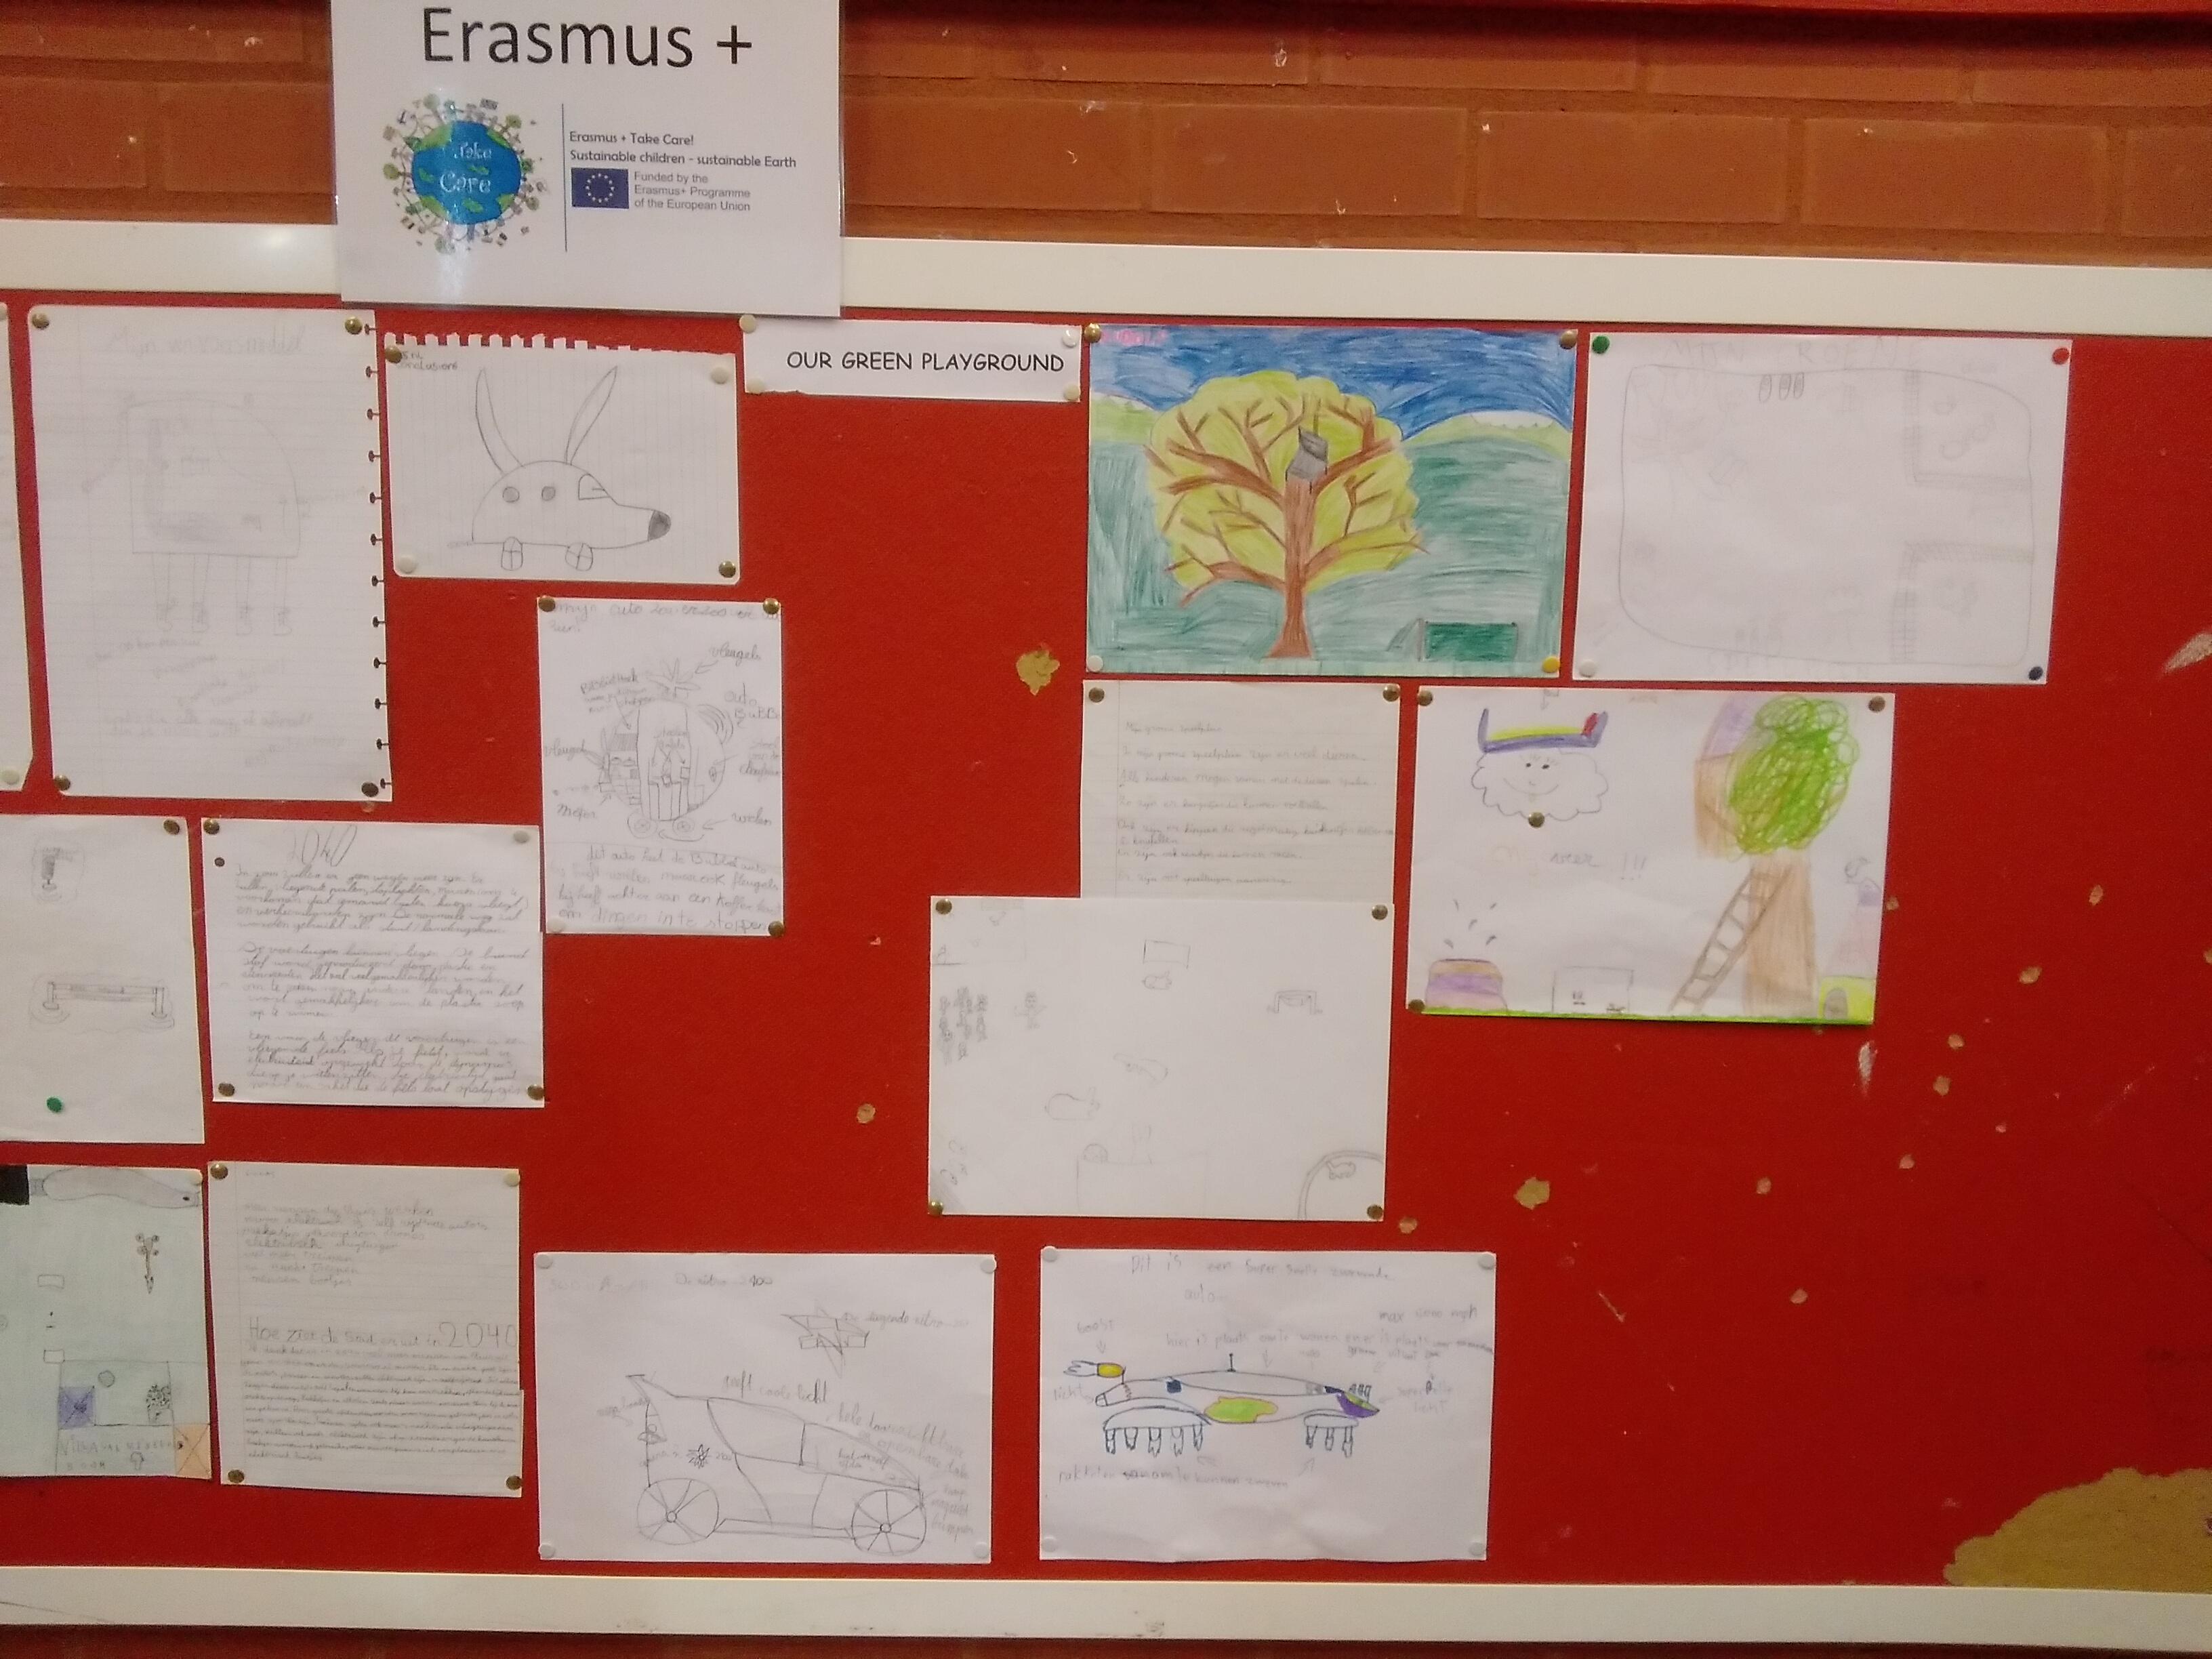 Erasmus schoolyard